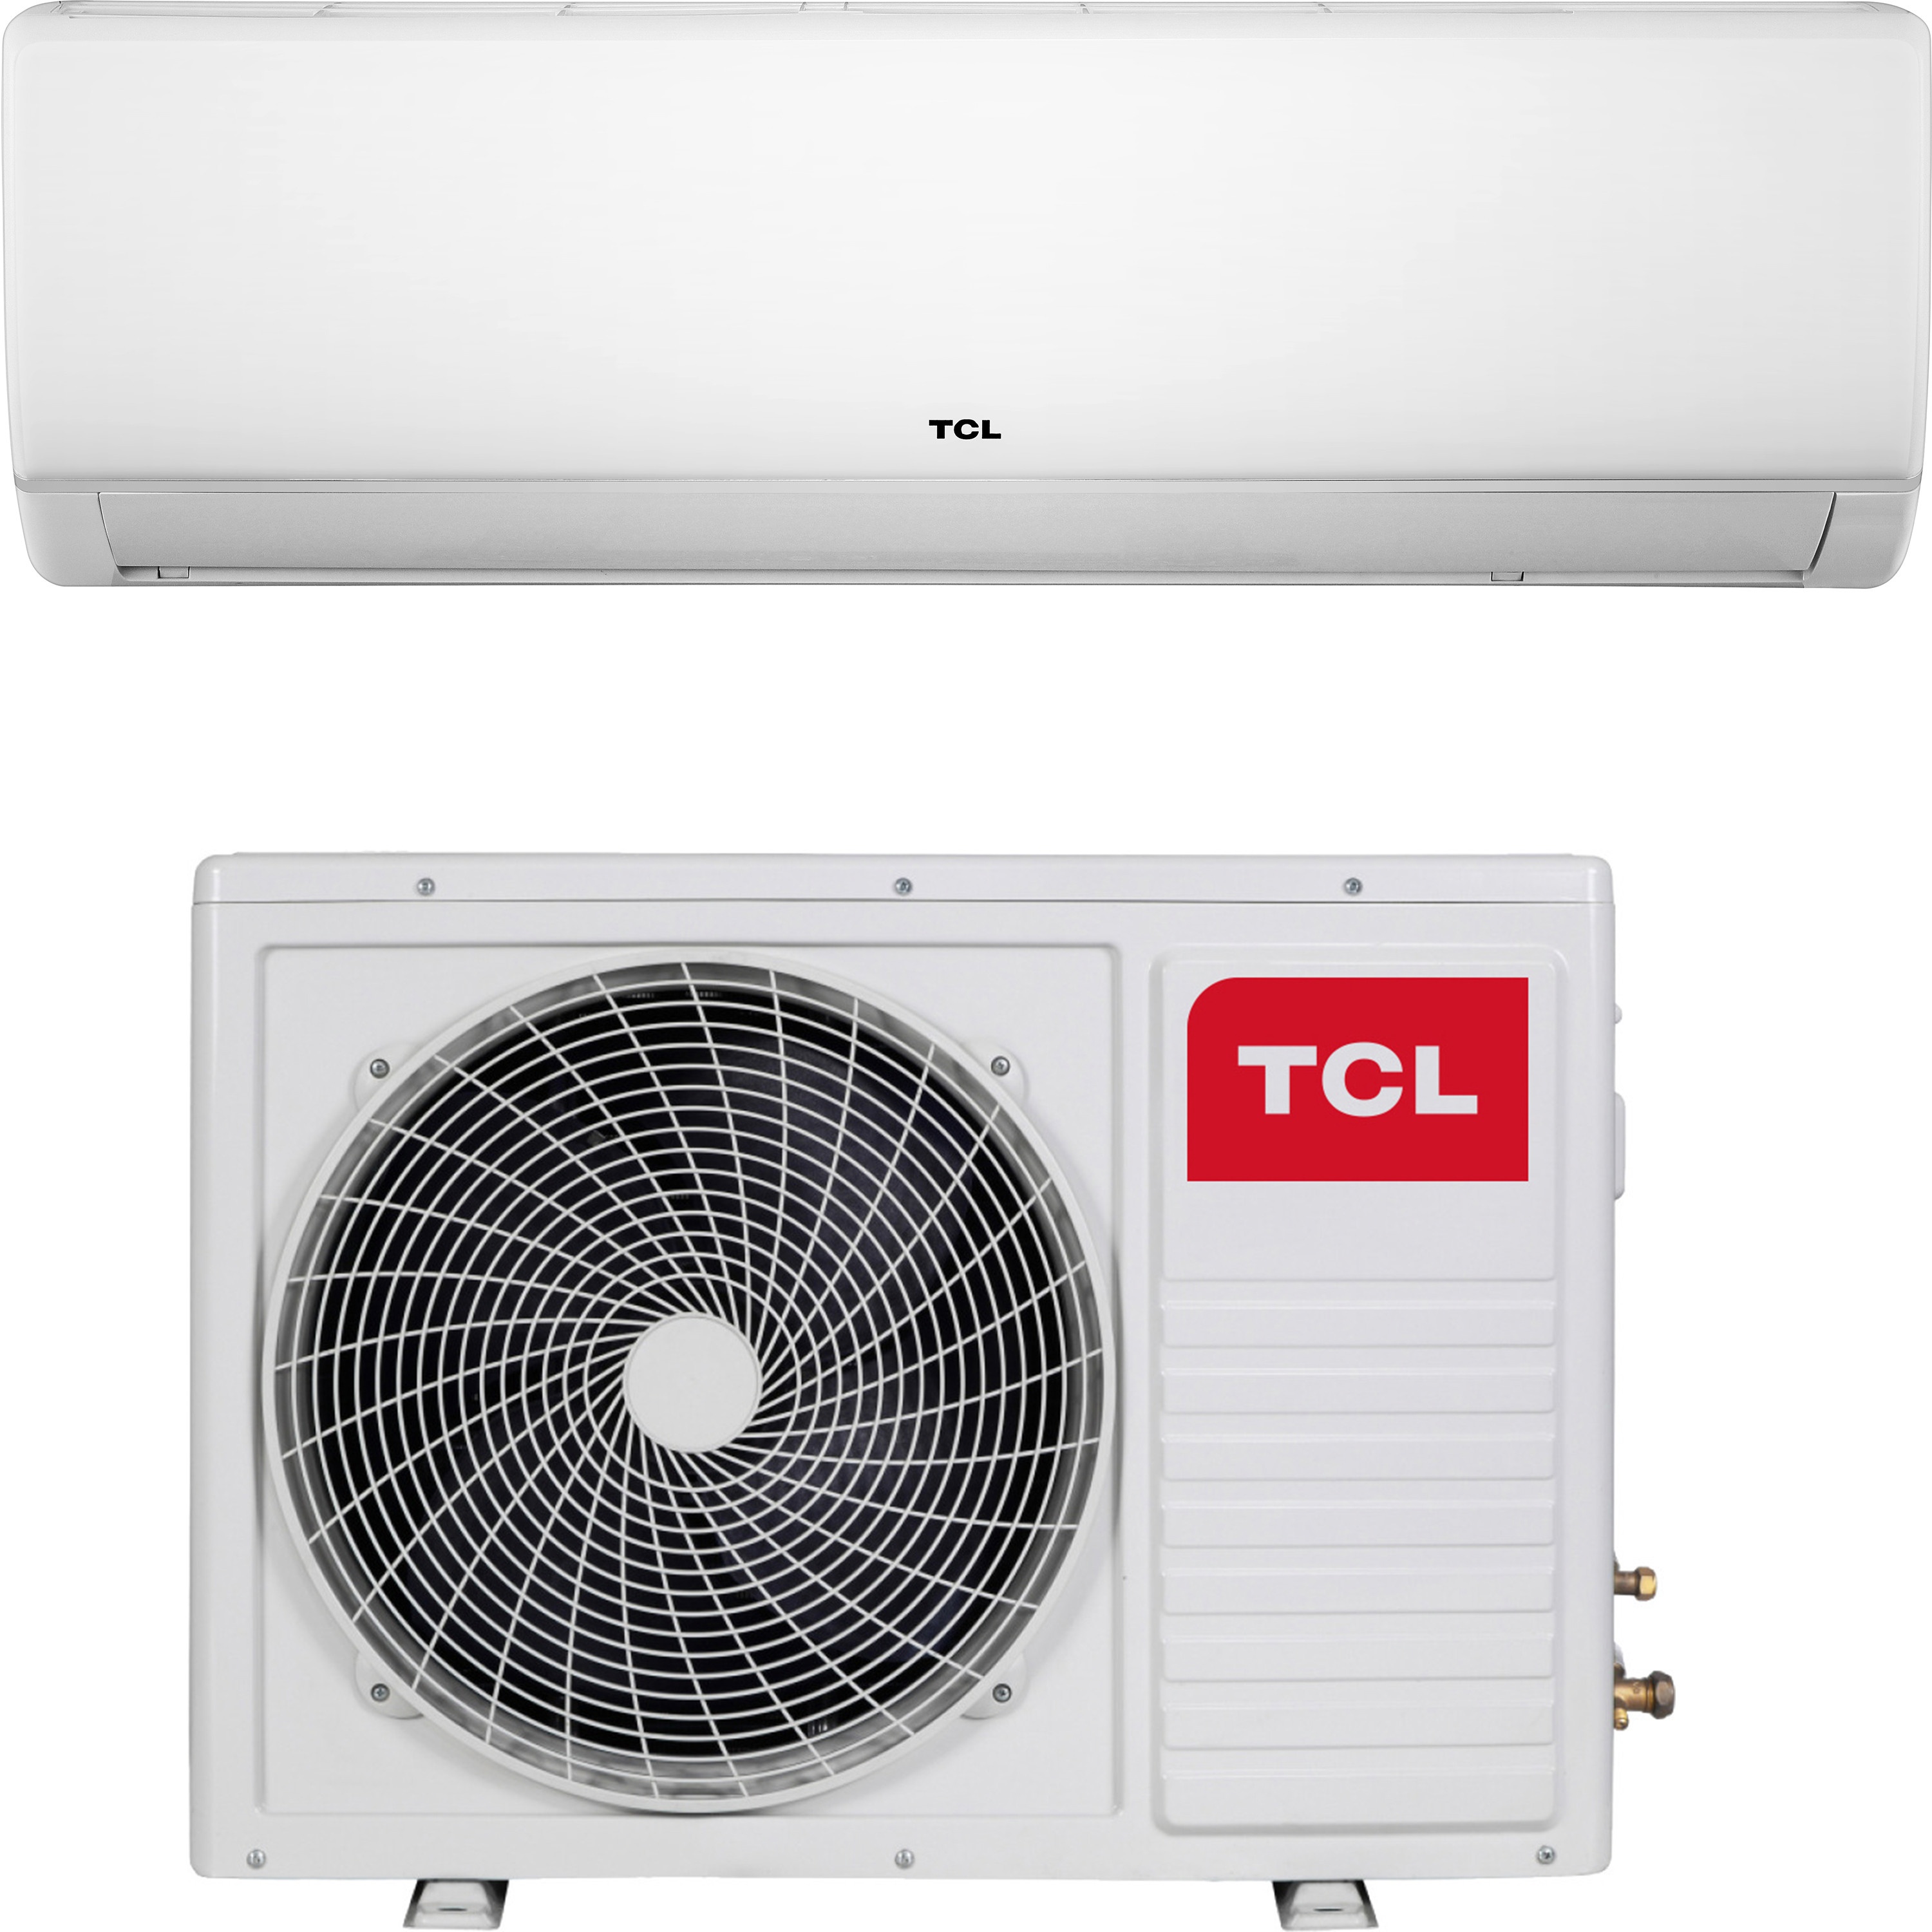 Купить кондиционер tcl 18 тыс. btu TCL Miracle Inverter TAC-18CHSA/VB в Киеве